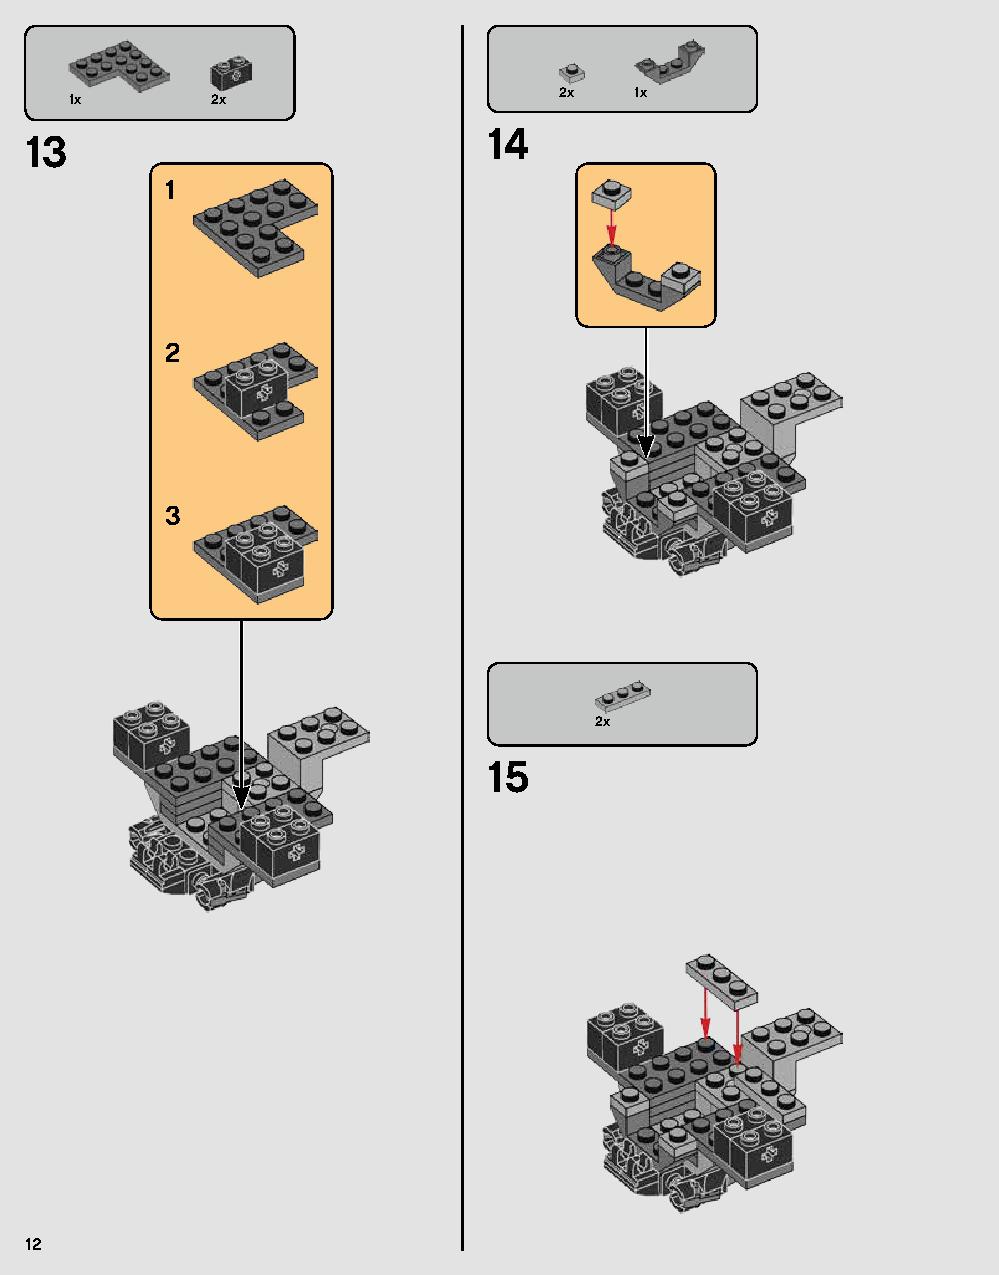 ダース・ベイダーの城 75251 レゴの商品情報 レゴの説明書・組立方法 12 page